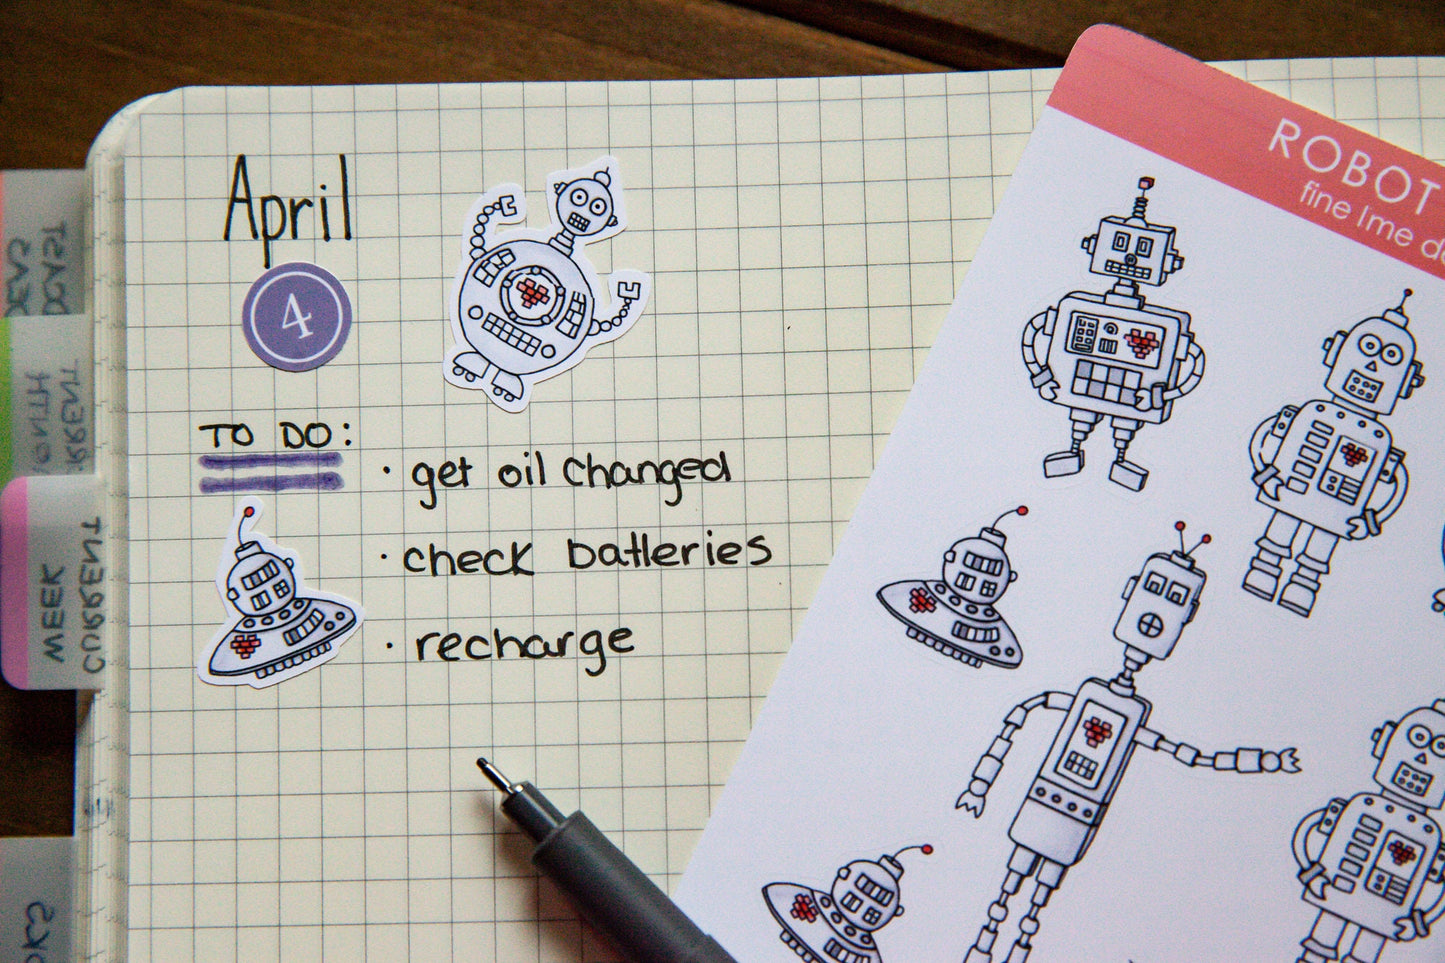 Robot Love Sticker Sheet